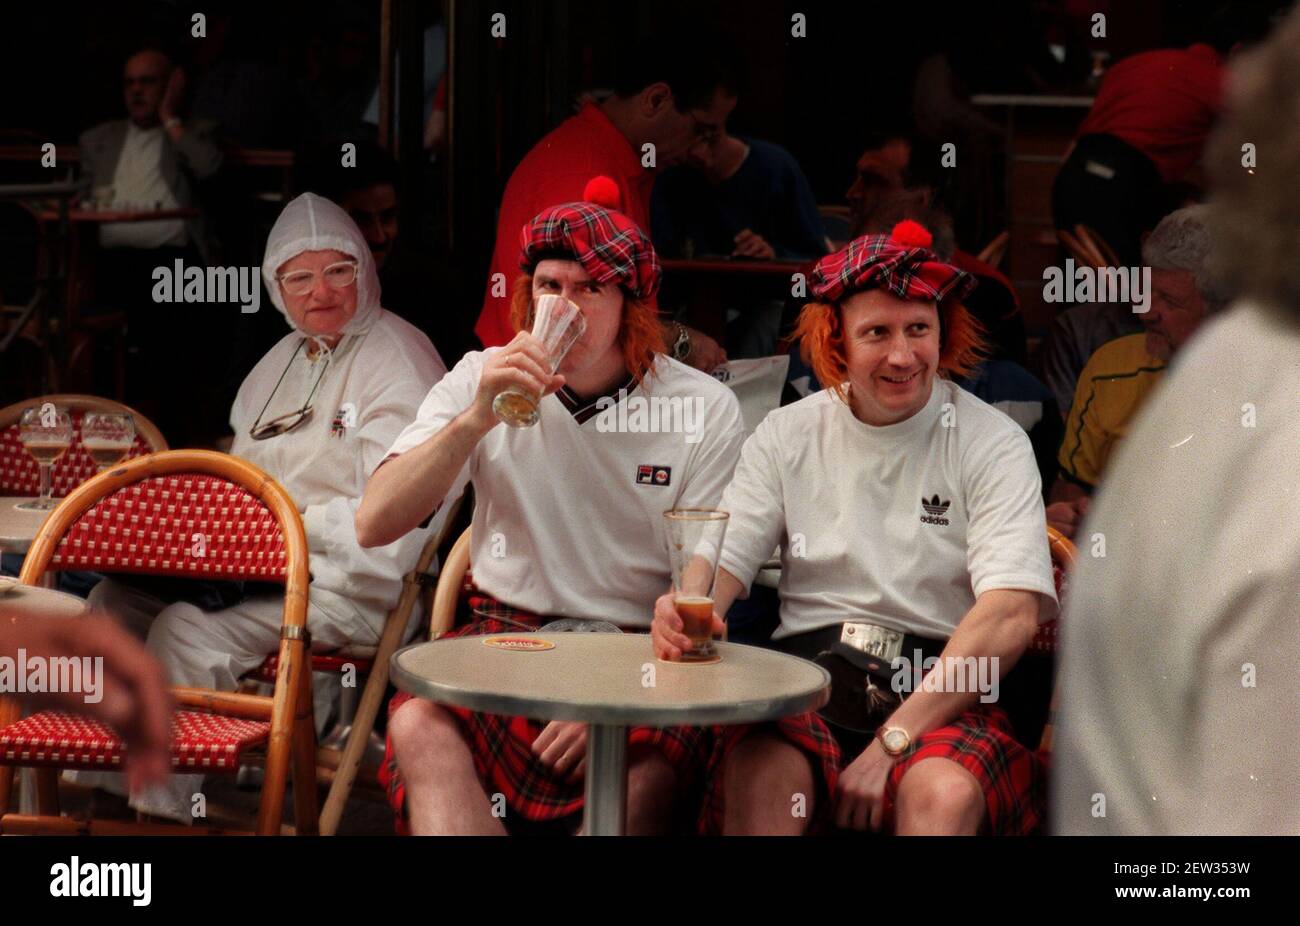 Les supporters écossais commandant des bières auprès du serveur le 1998 juin Champs Elysées à Paris avant l'ouverture du match au Stade De France entre l'Ecosse et le Brésil Banque D'Images